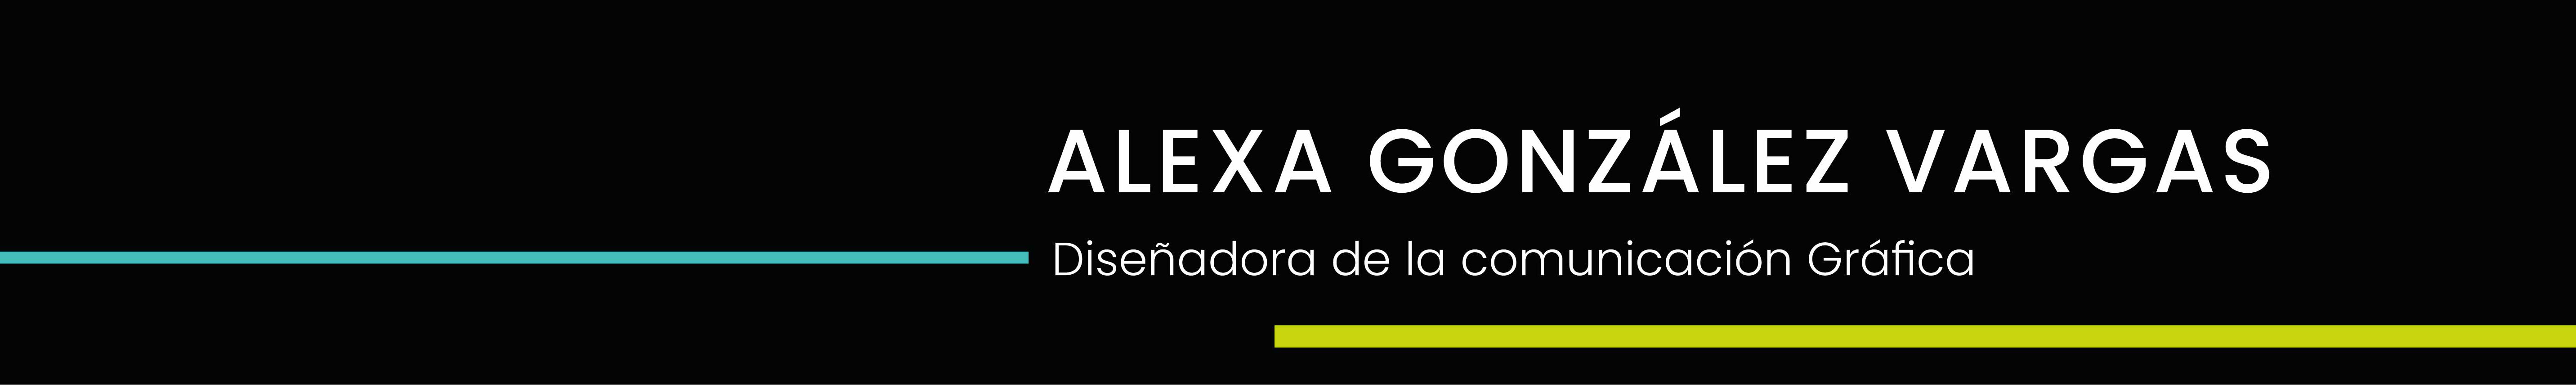 Alexa Gonzálezs profilbanner